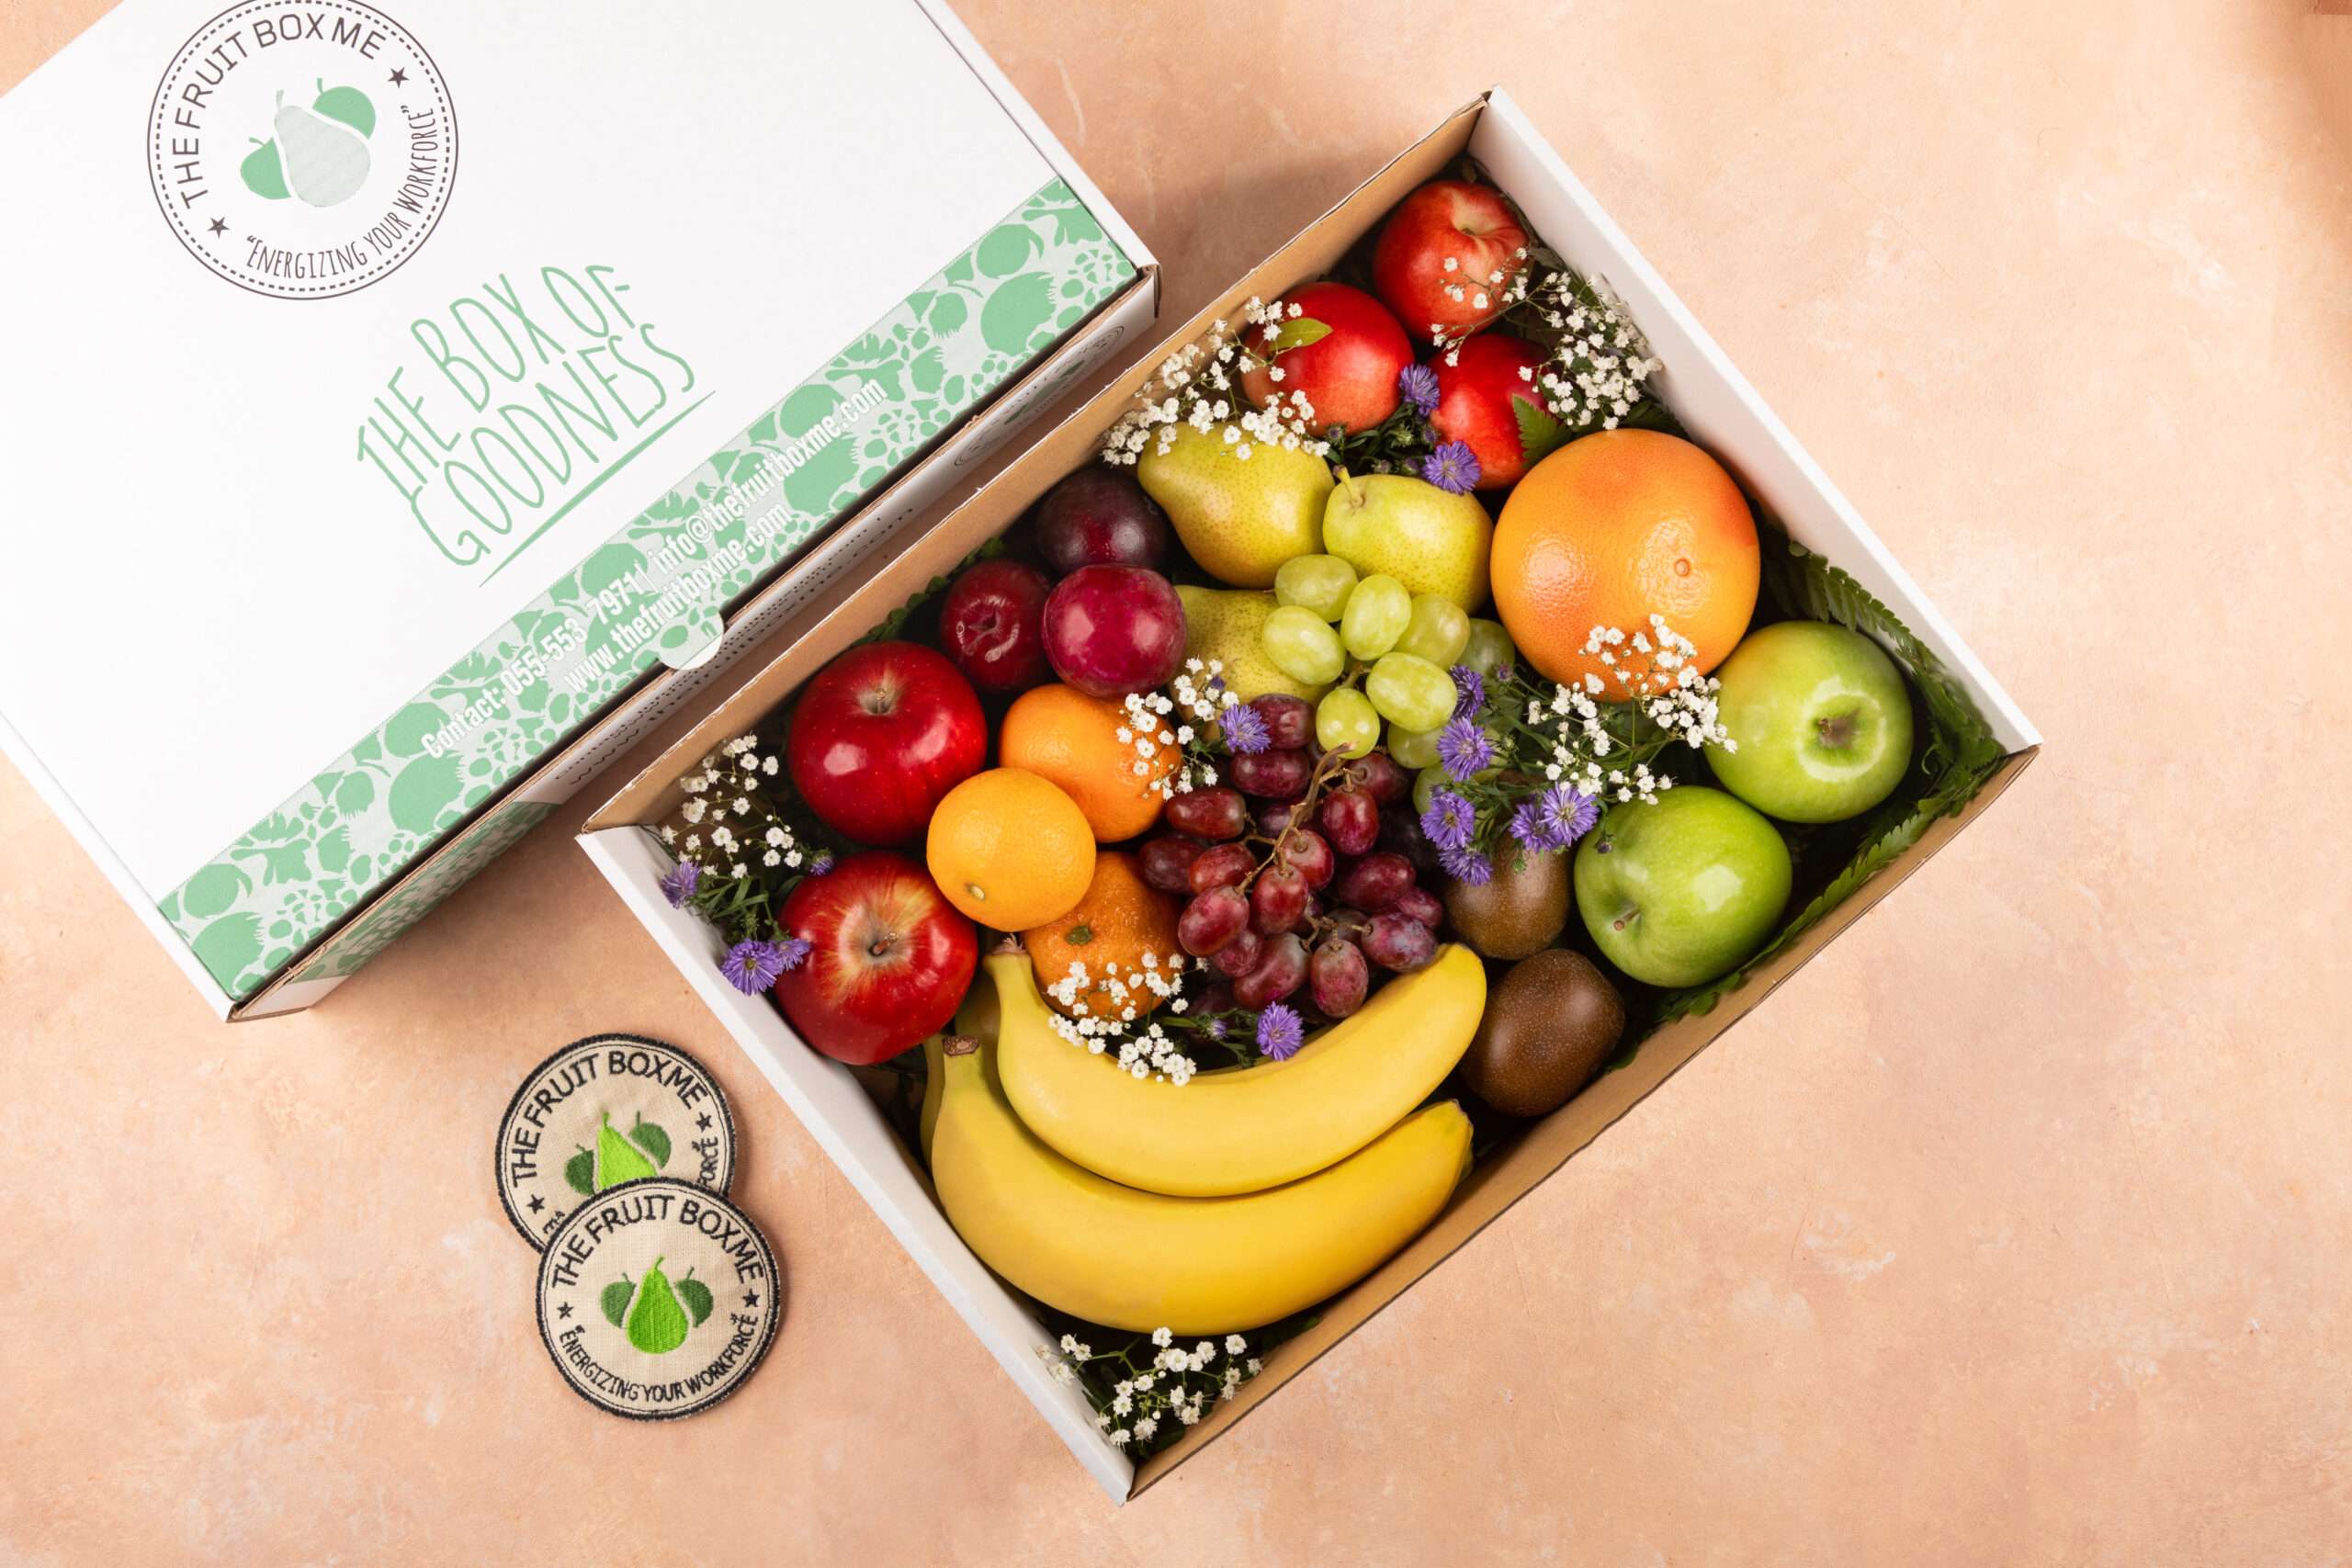 Own Branding Fruit Boxes